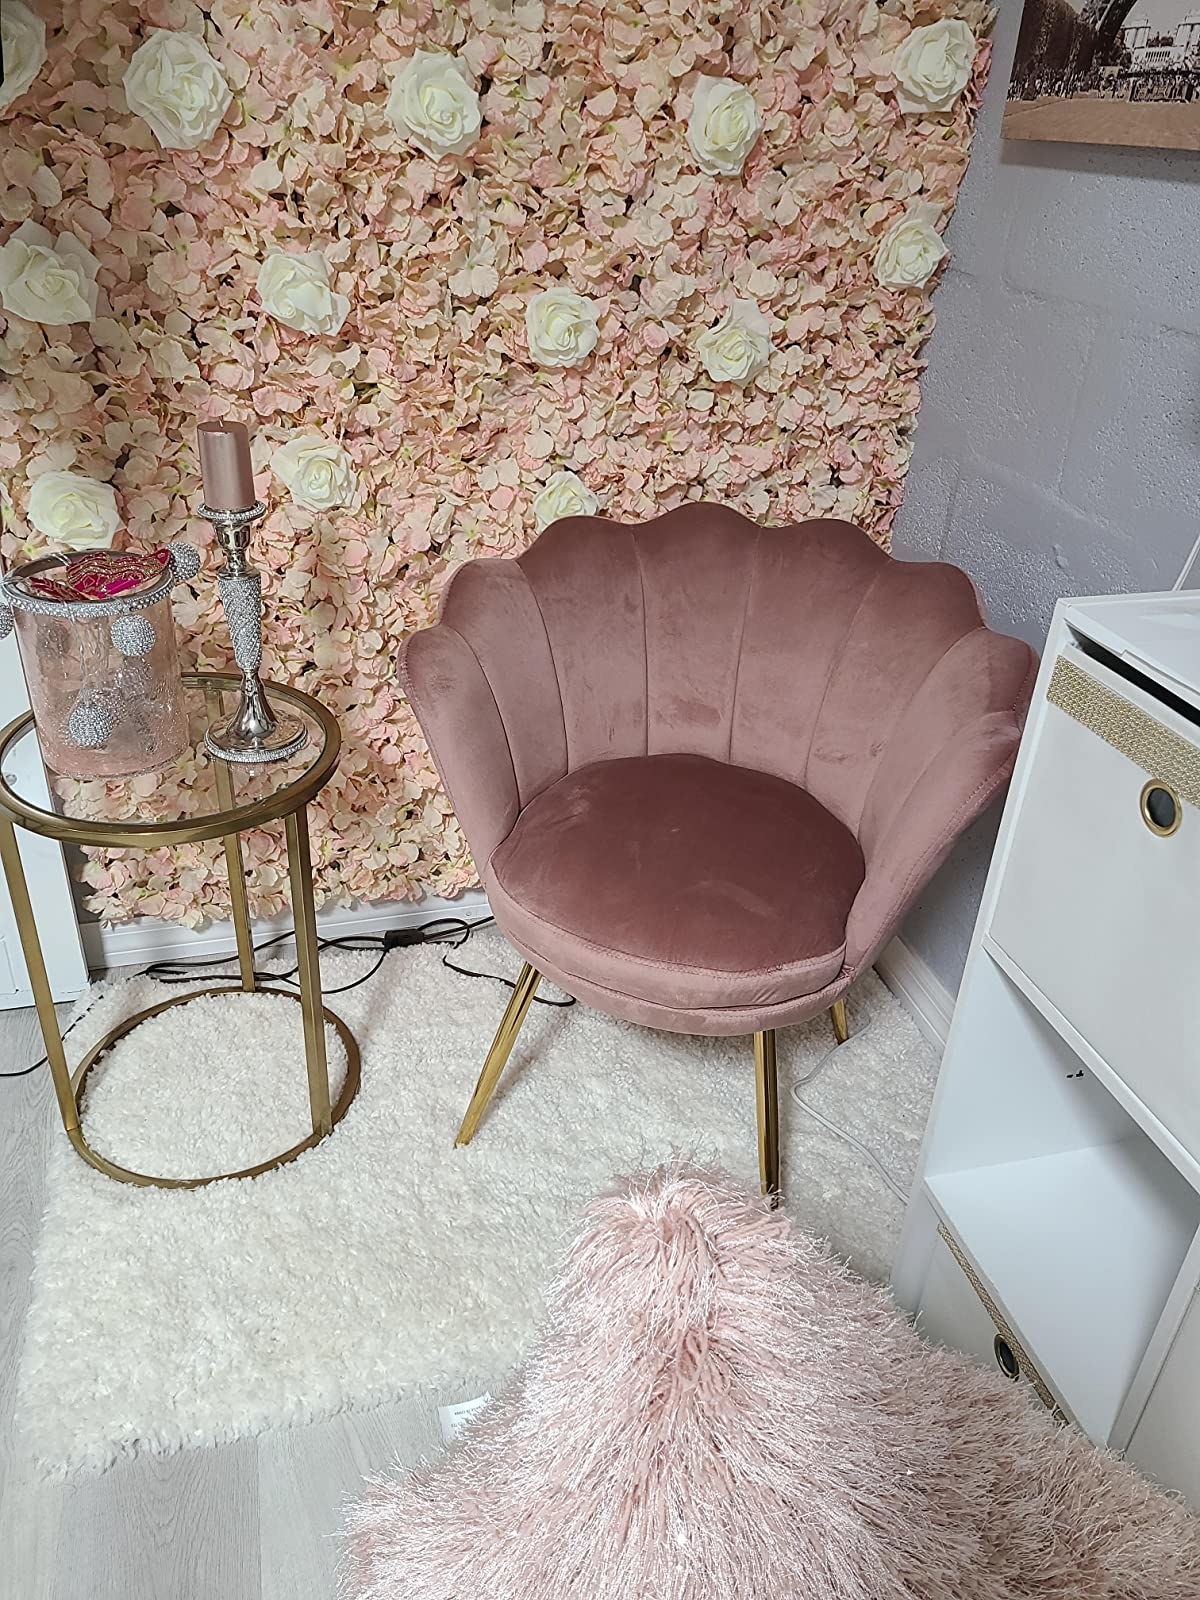 the pink velvet chair